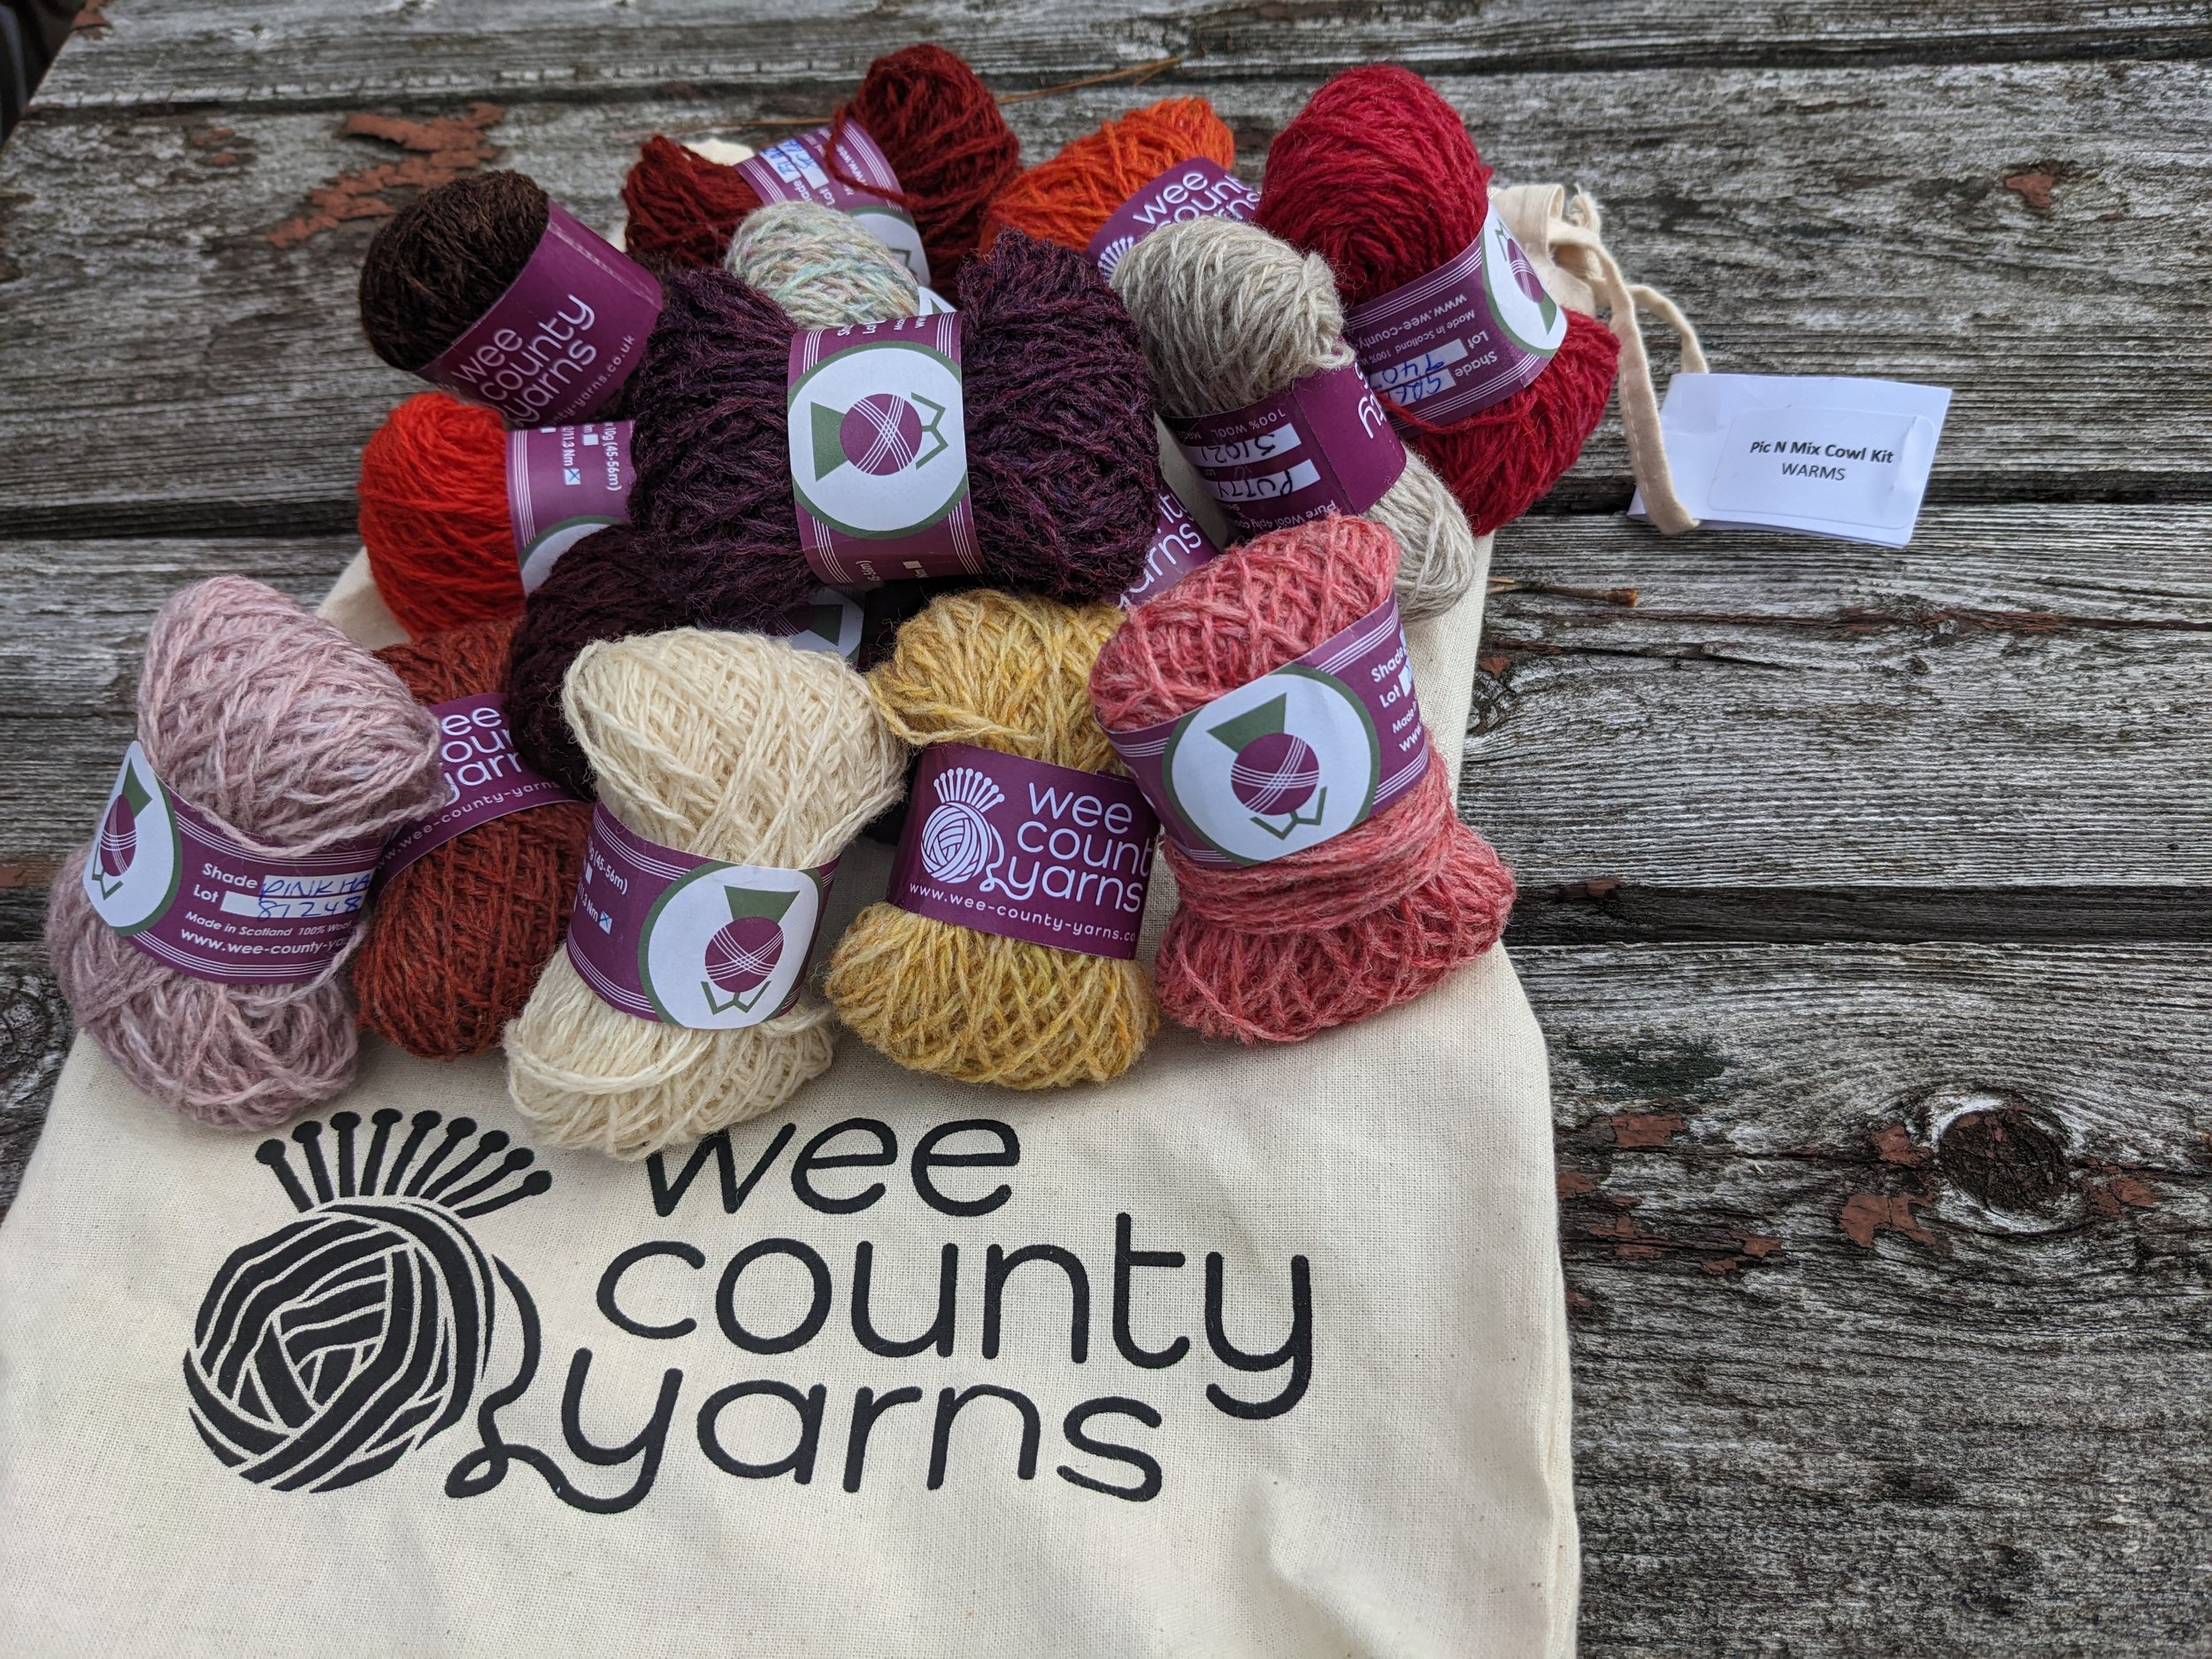 Lion Brand Yarn - 24/7 Cotton - 6 Skein Assortment (Autumn) – Craft Bunch